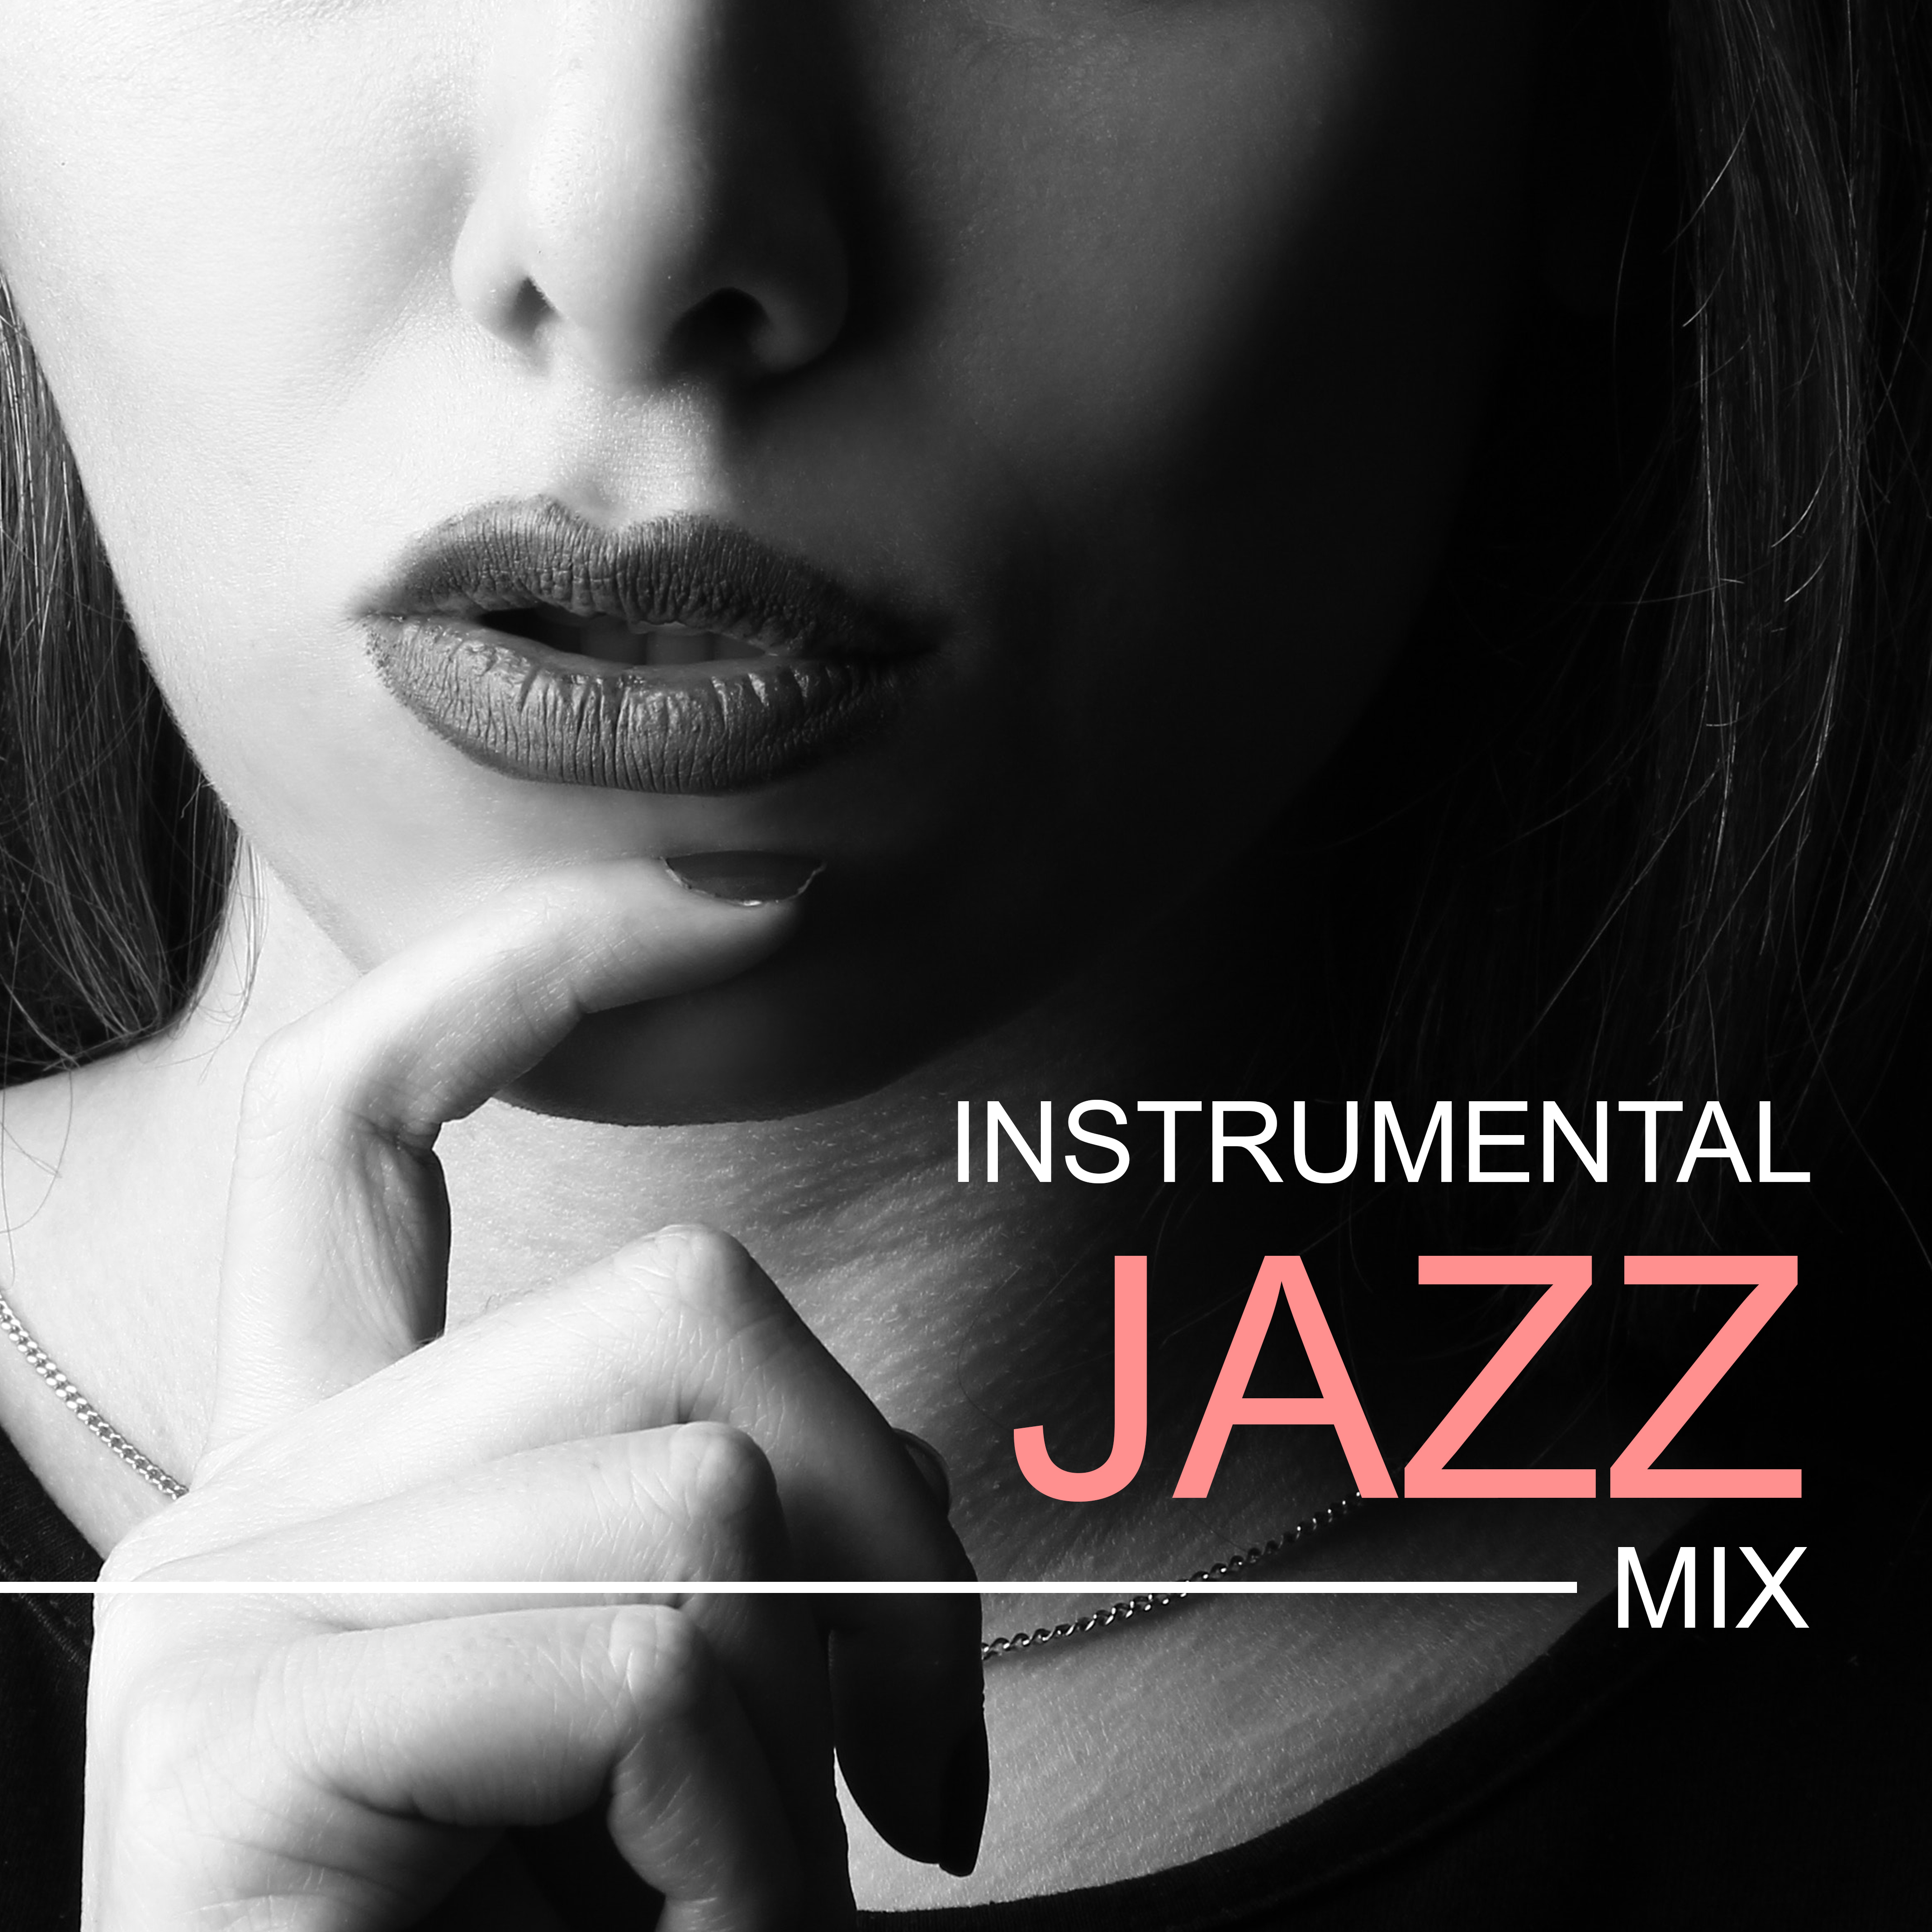 Instrumental Jazz Mix